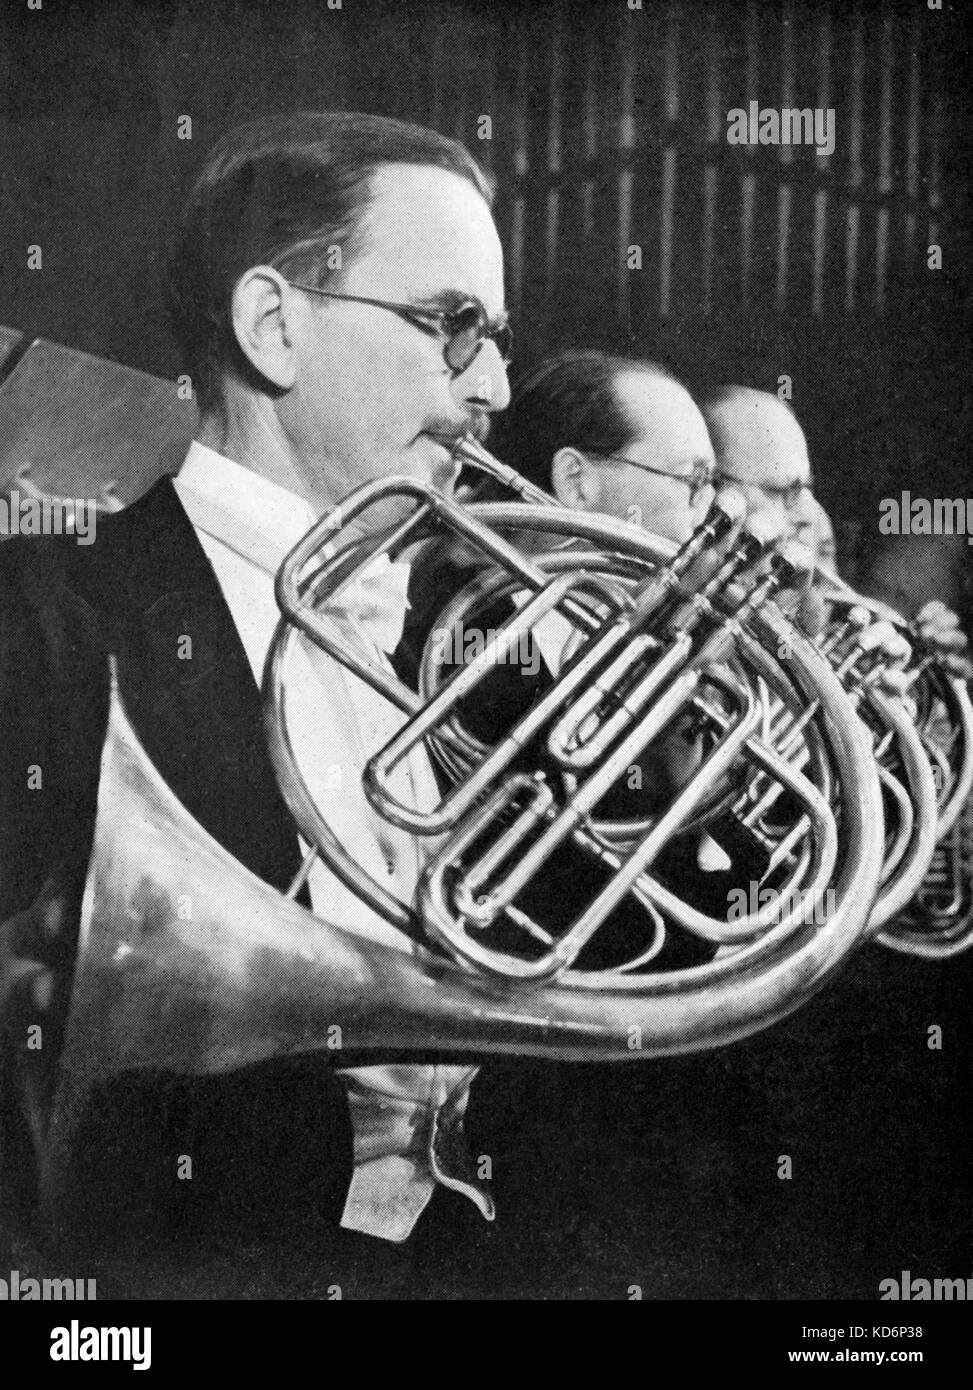 Aubrey Brain giocare corno, leader della BBC Symphony Orchestra. Corno  inglese player 1893 - 1955 Foto stock - Alamy